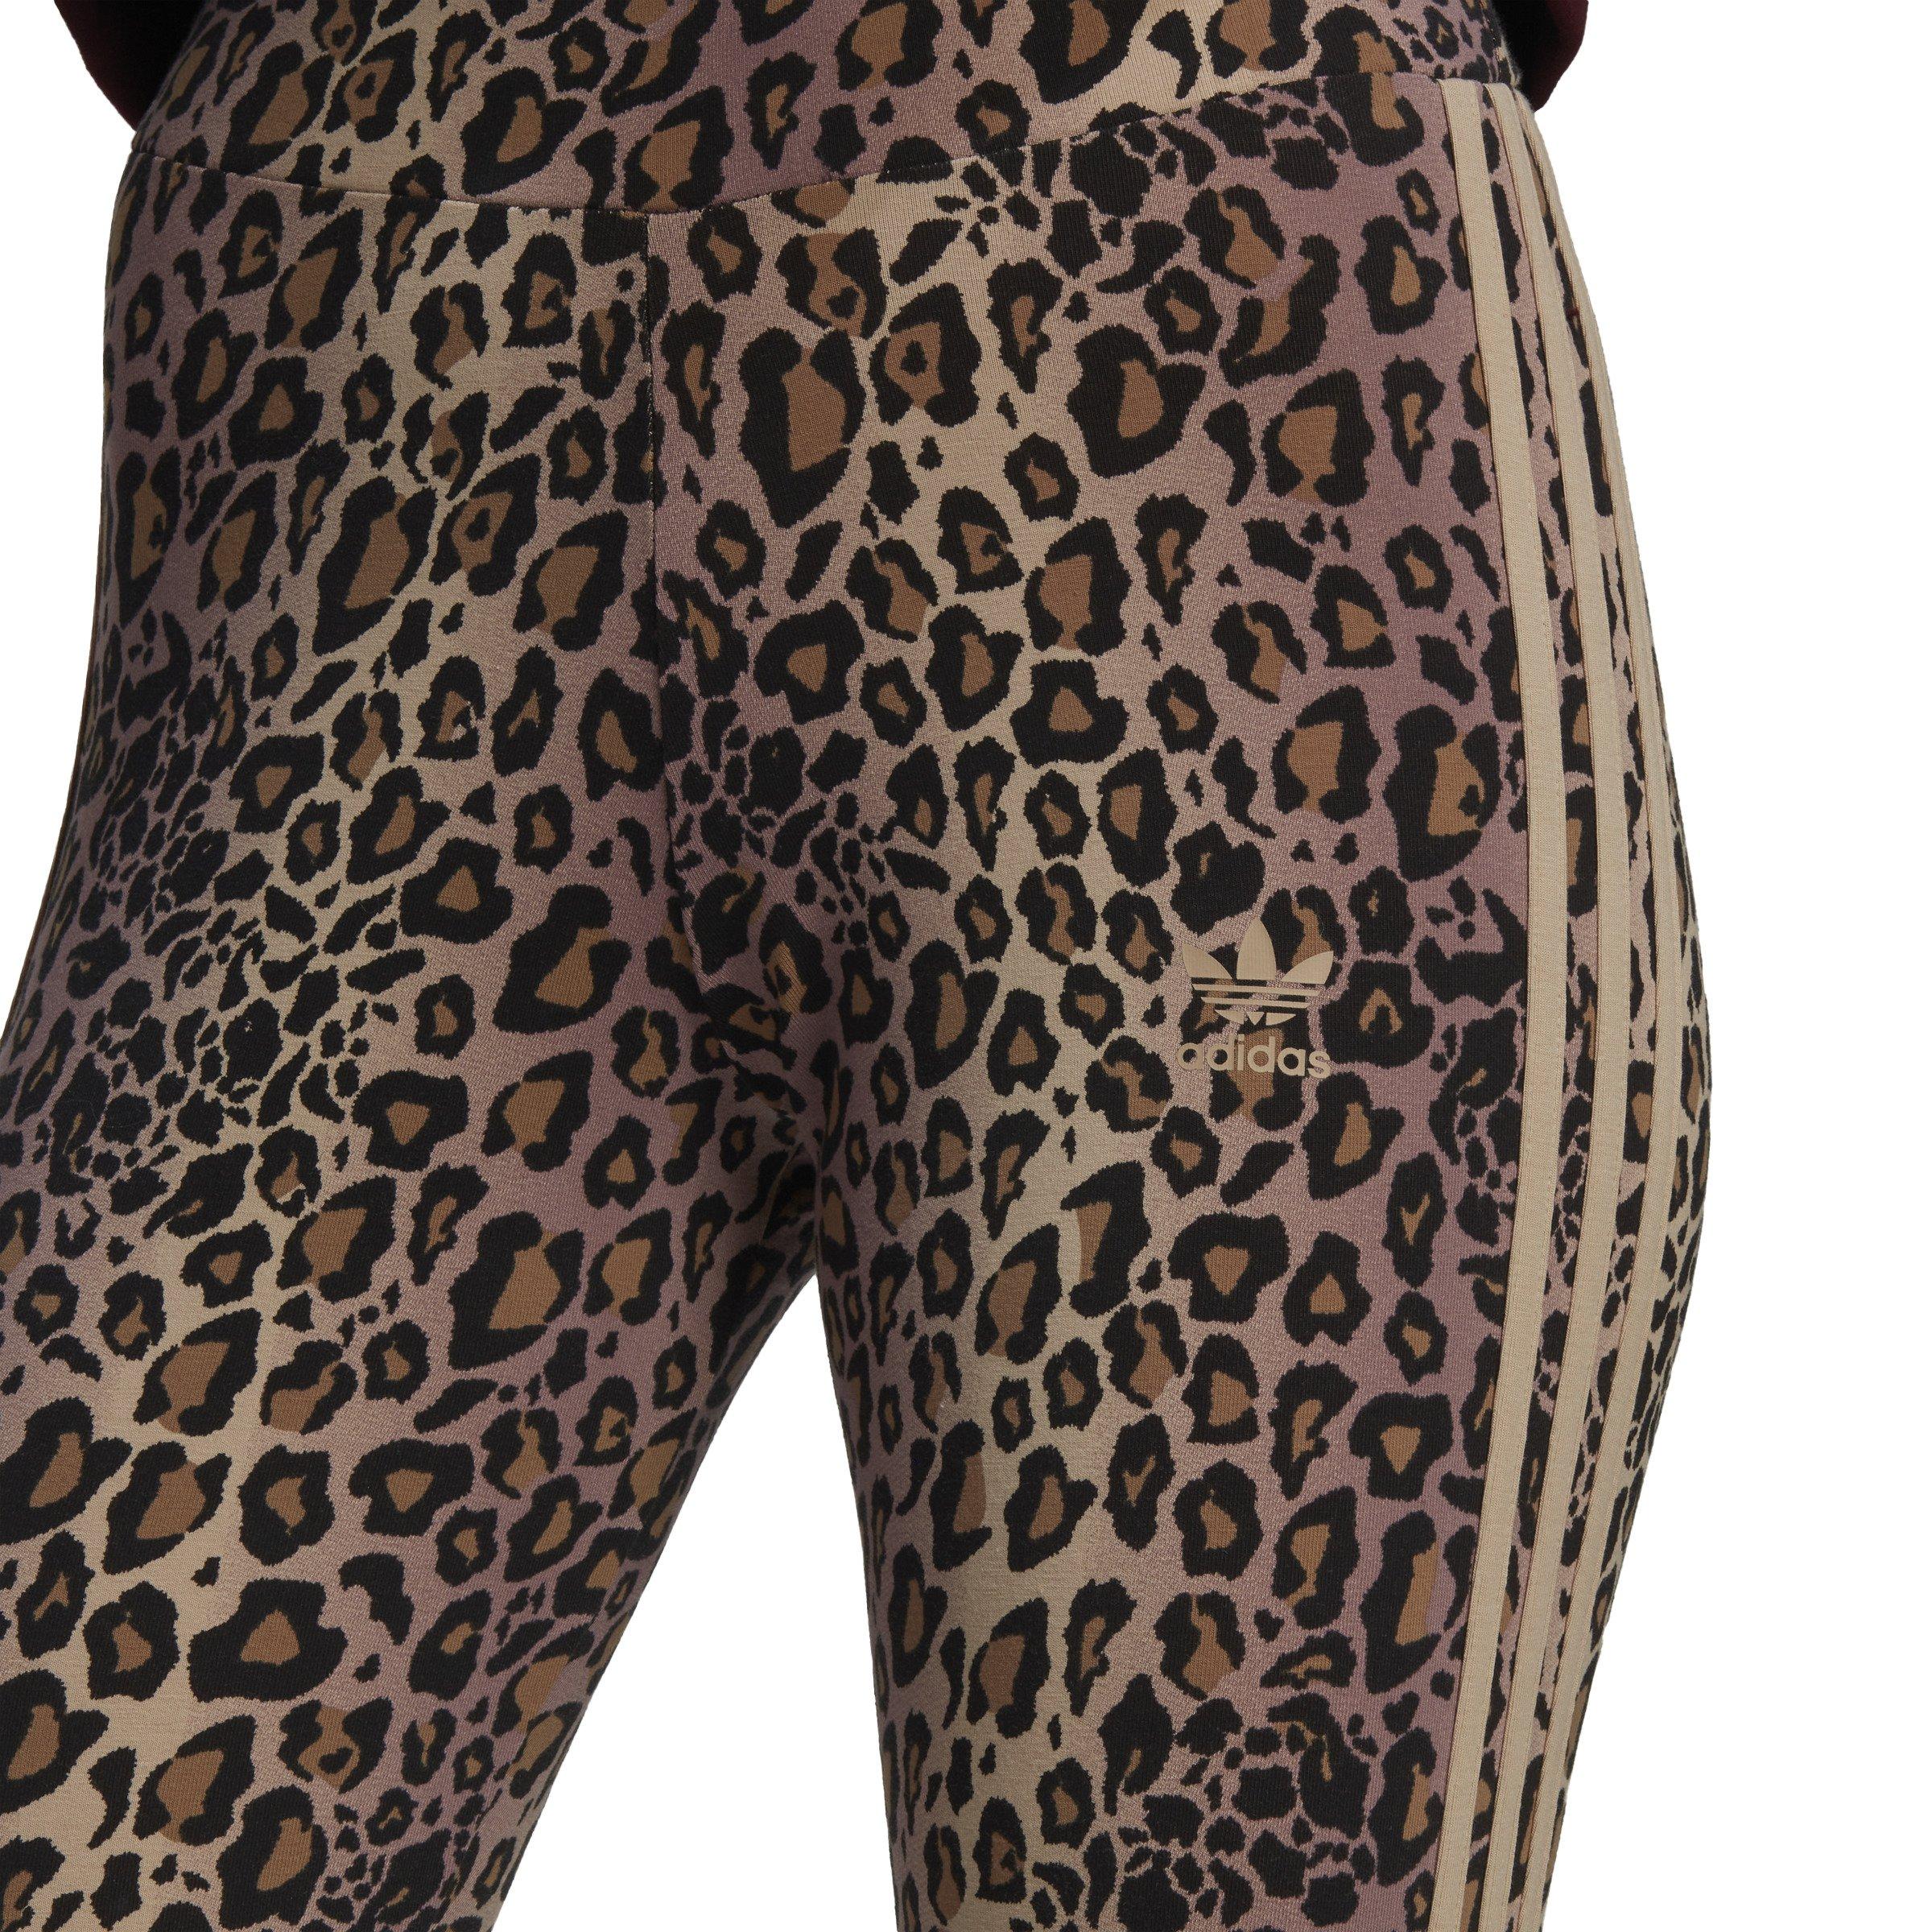 adidas Originals Originals X Farm Multi Leopard Print Leggings